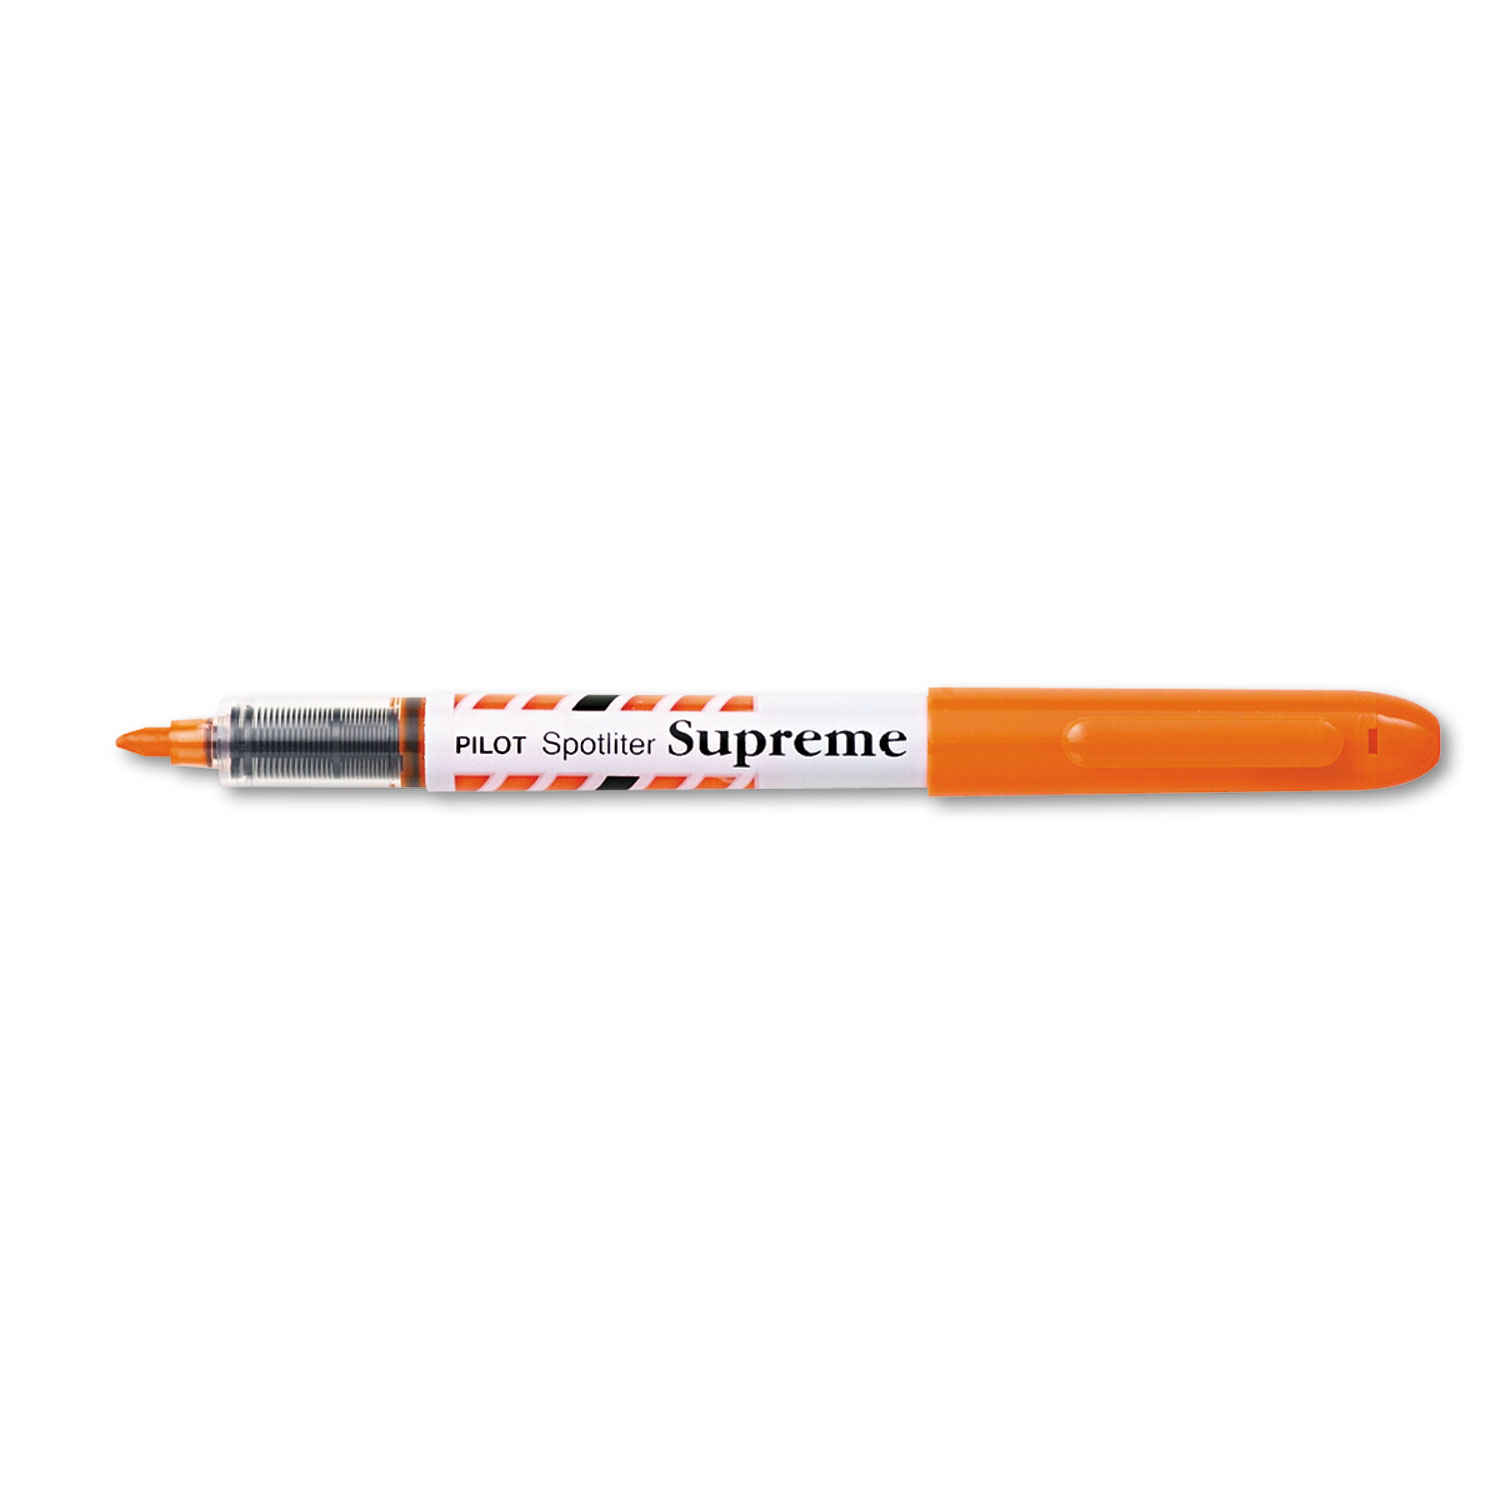  Pilot 16009 Spotliter Supreme Highlighter, Chisel Tip, Fluorescent Orange (PIL16009) 